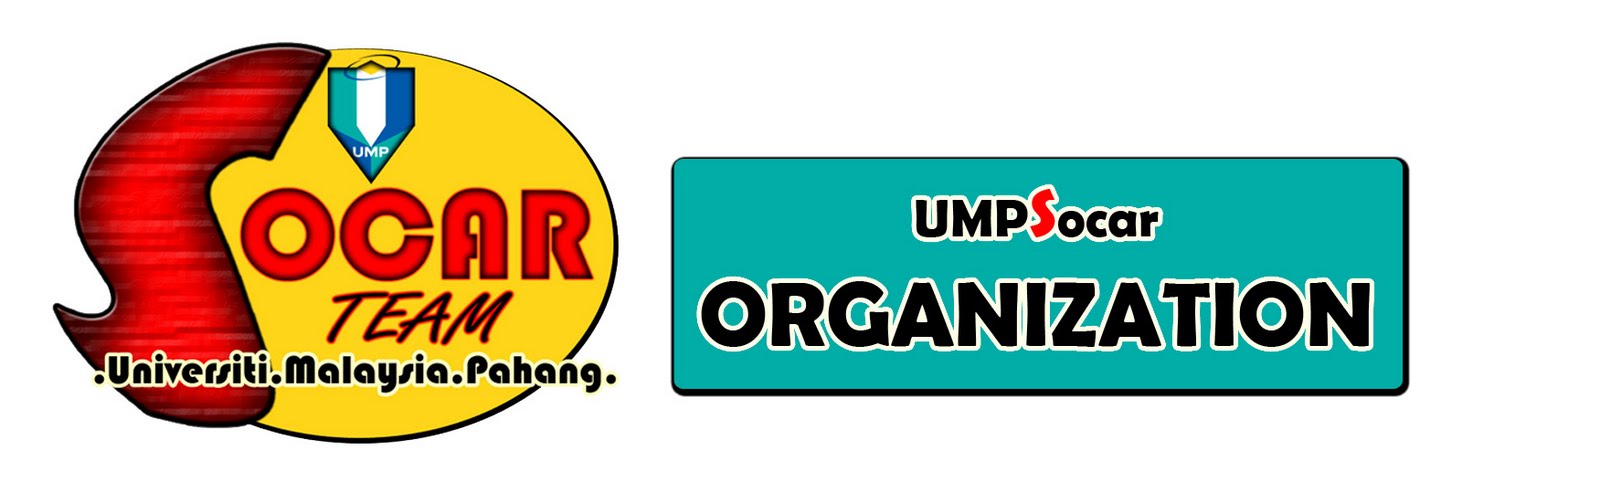 UMPSocar - Organization